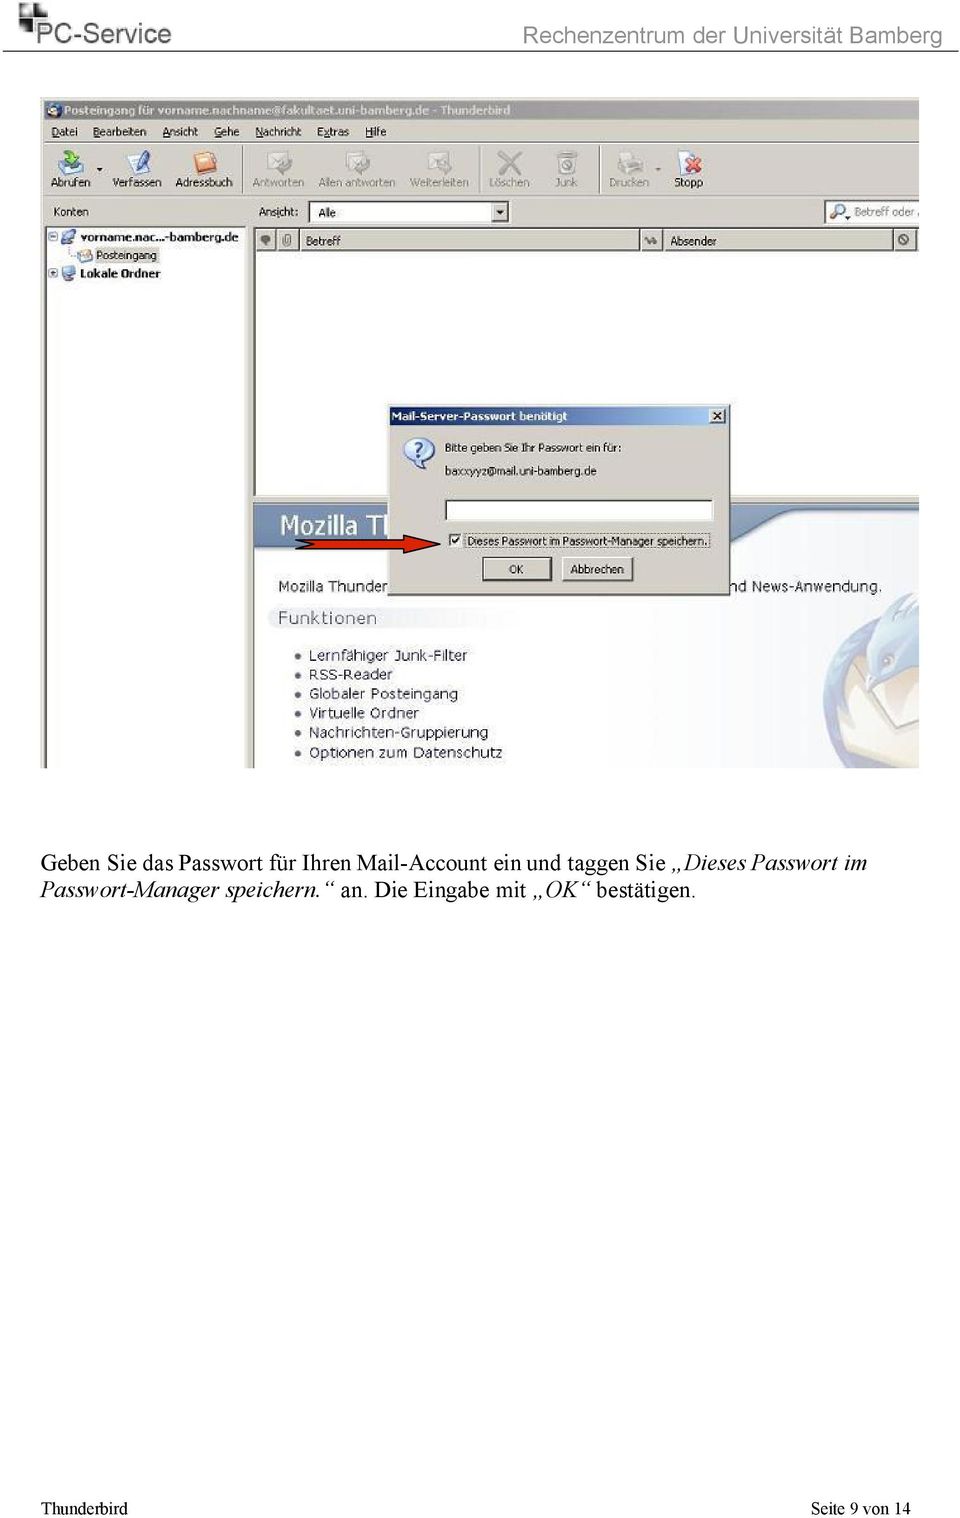 Passwort im Passwort-Manager speichern. an.